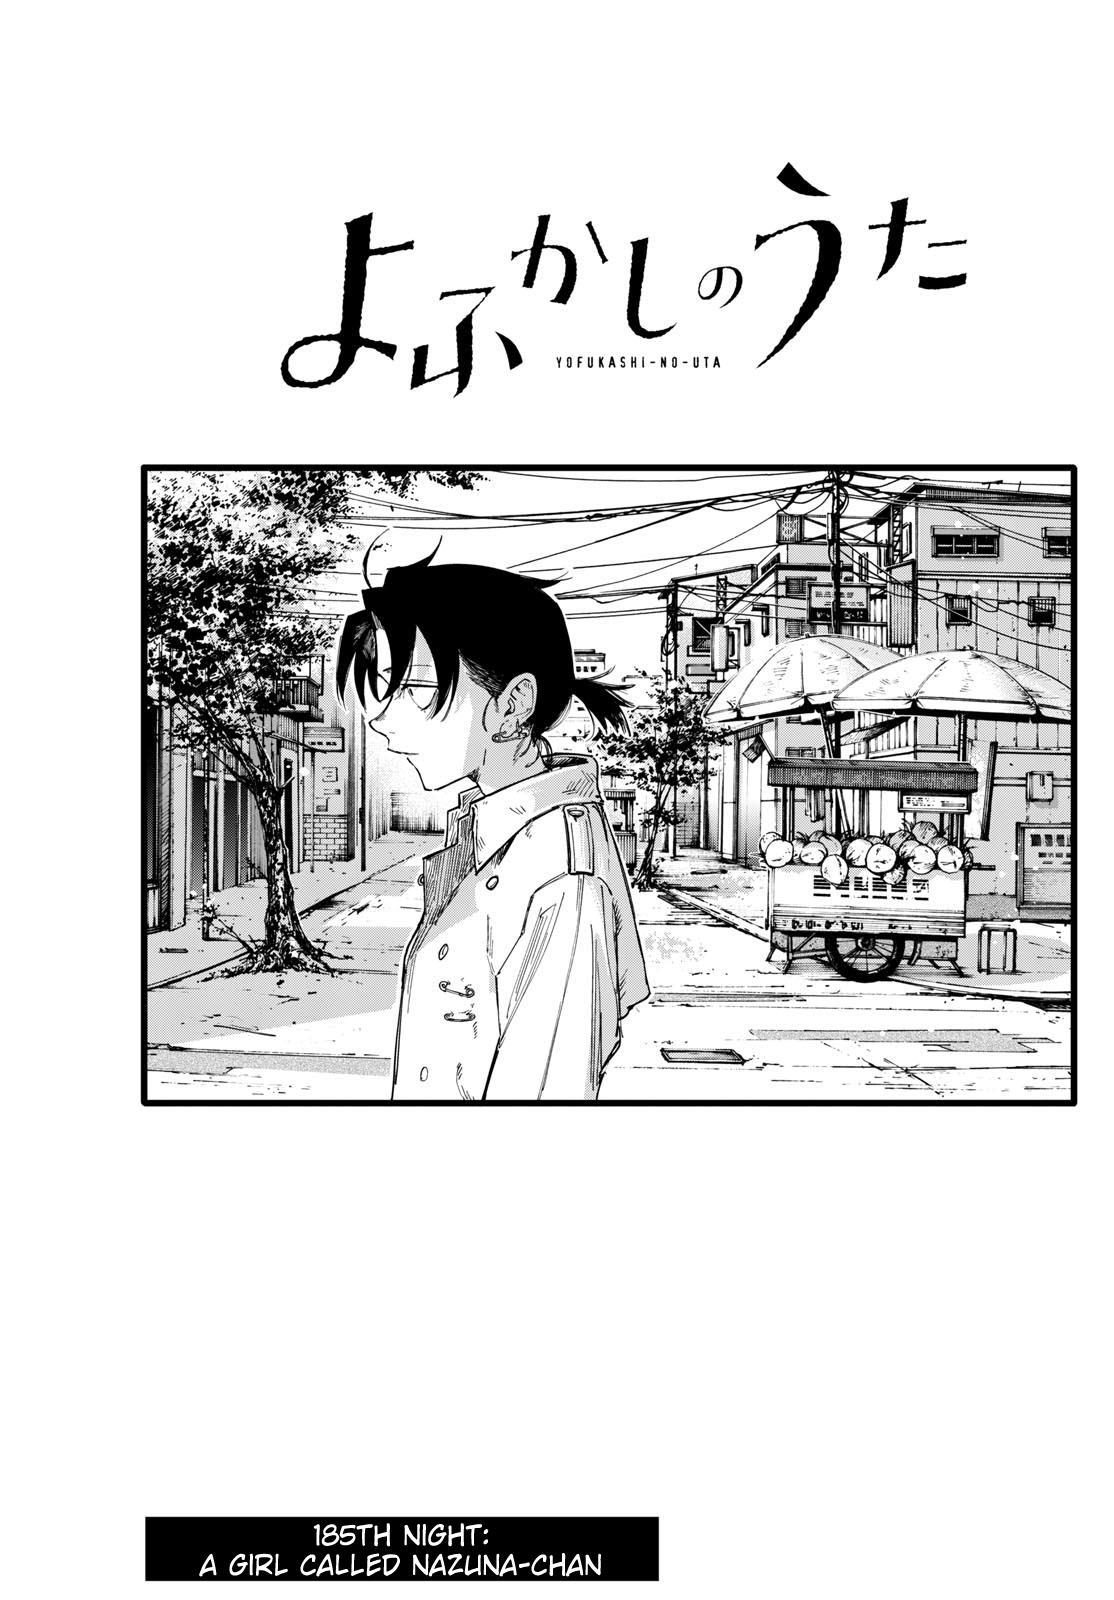 Yofukashi no Uta Vol.9 Ch.183 Page 2 - Mangago